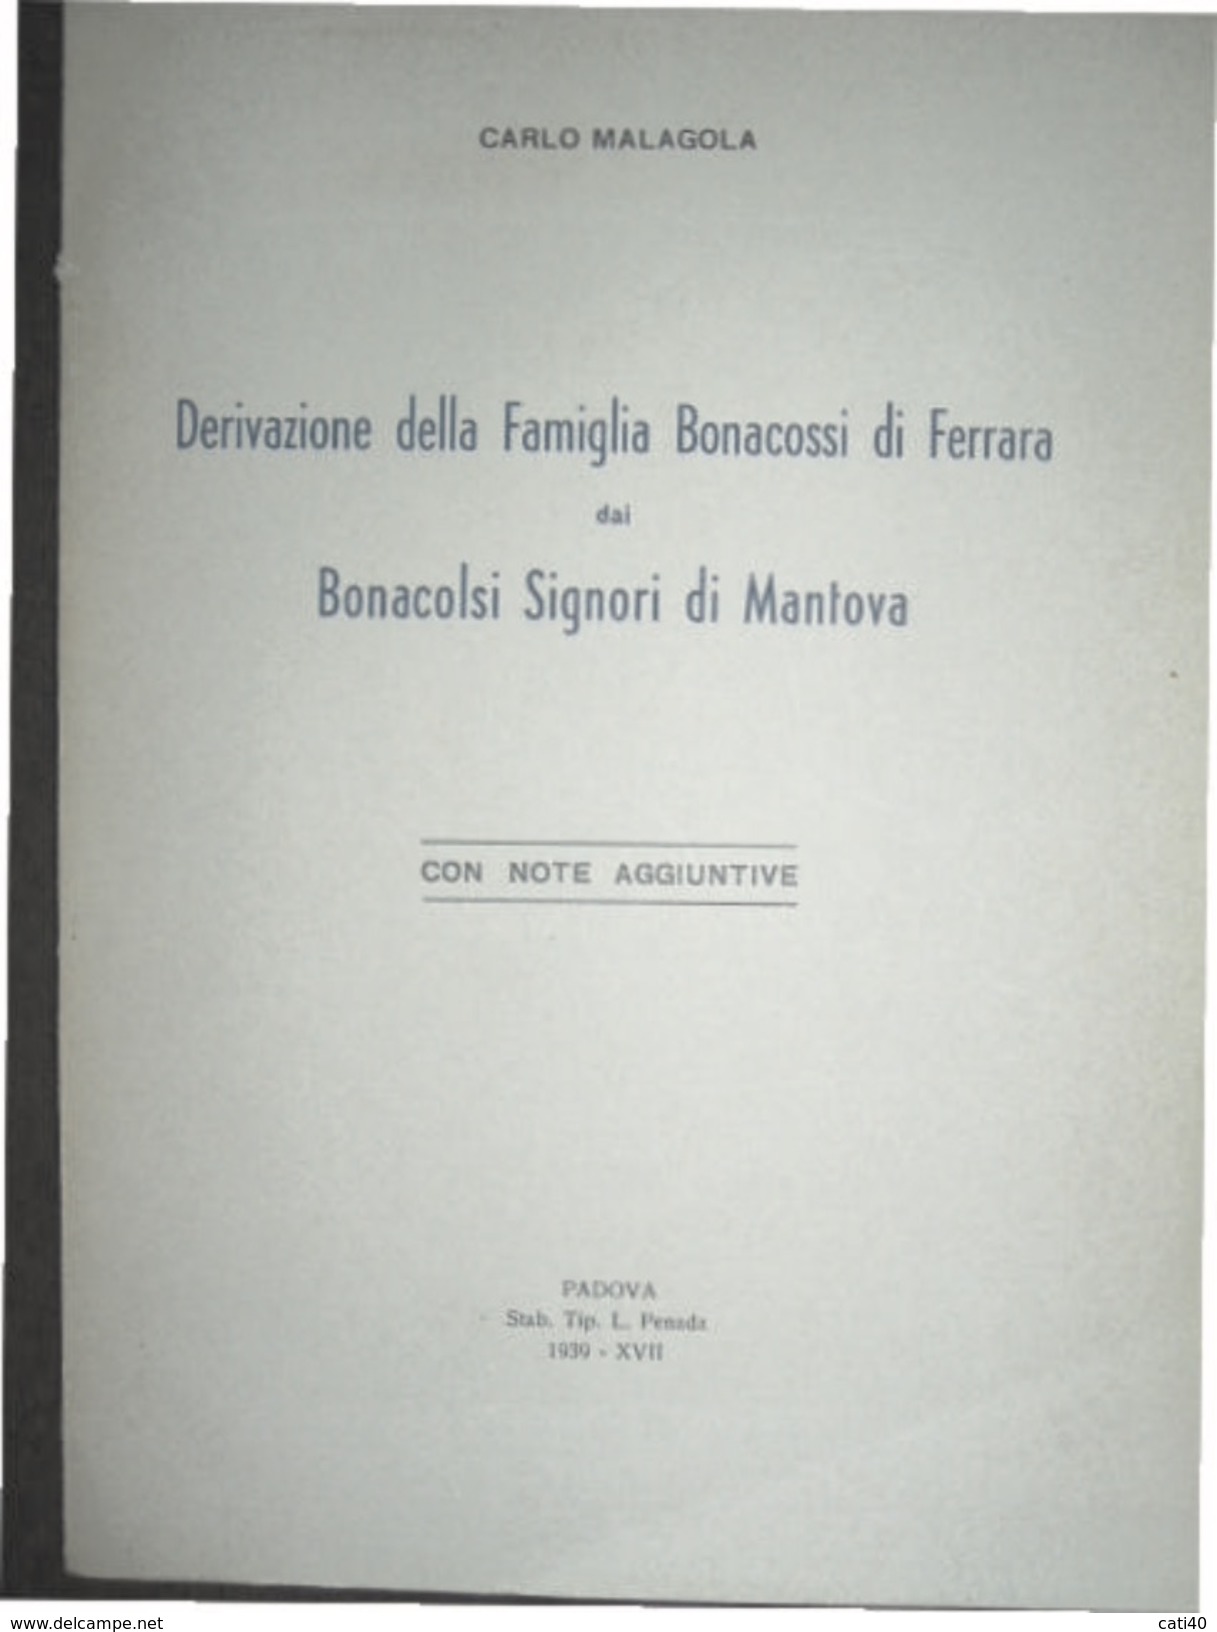 CARLO MALAGOLA DERIVAZIONE FAMIGLIA BONACOSSI DI FERRARA DAI BONACOLSI DI MANTOVA TIP.L.PENADA PADOVA 1939 - XVII - Wissenschaften